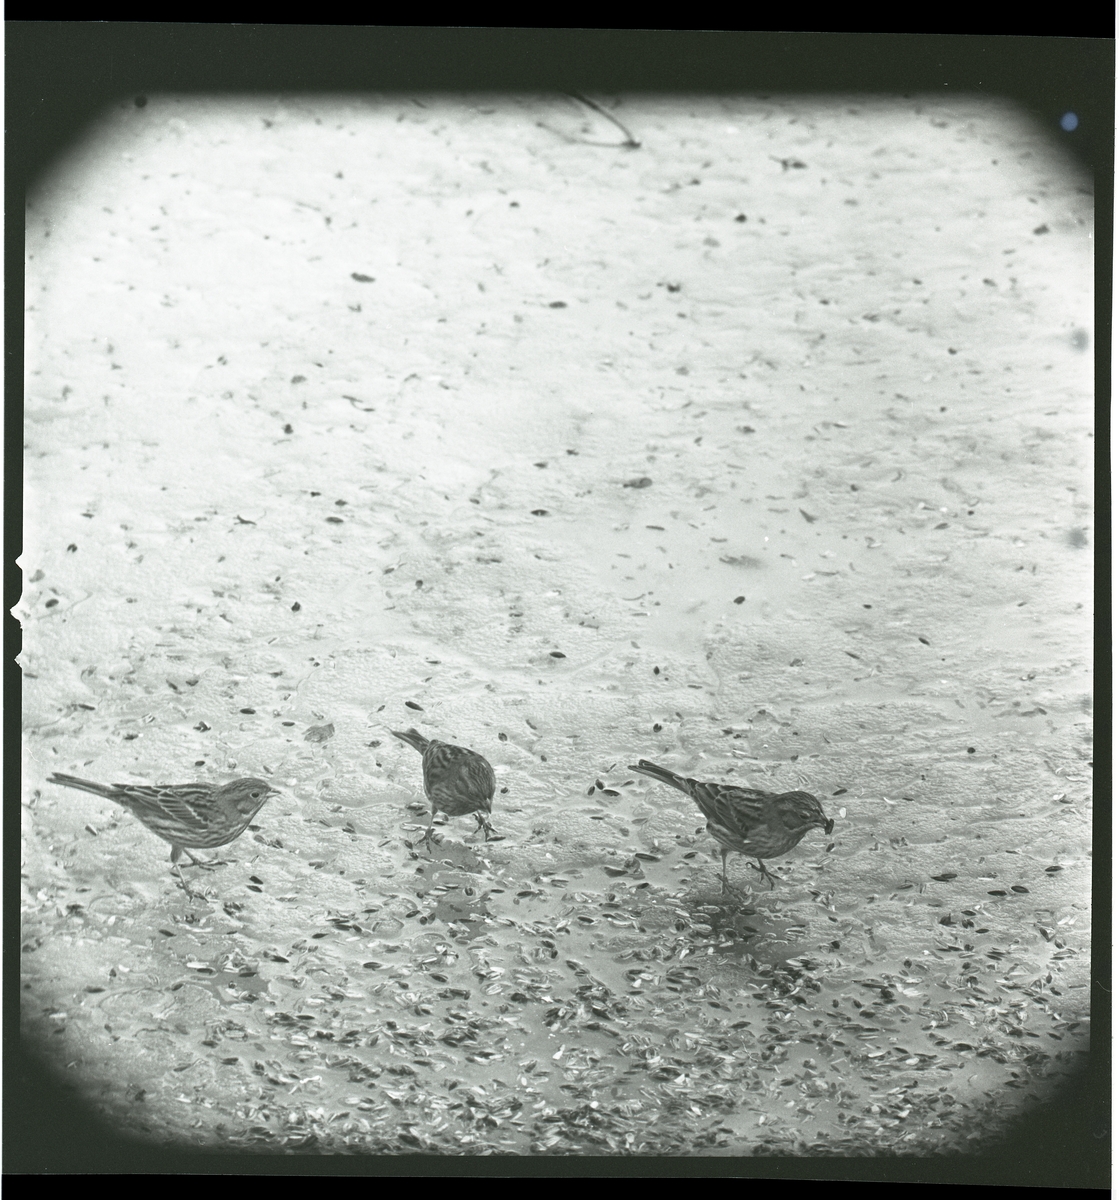 Tre gulsparvar står på isig mark med fastfrusna fågelfrön i mars 1965.